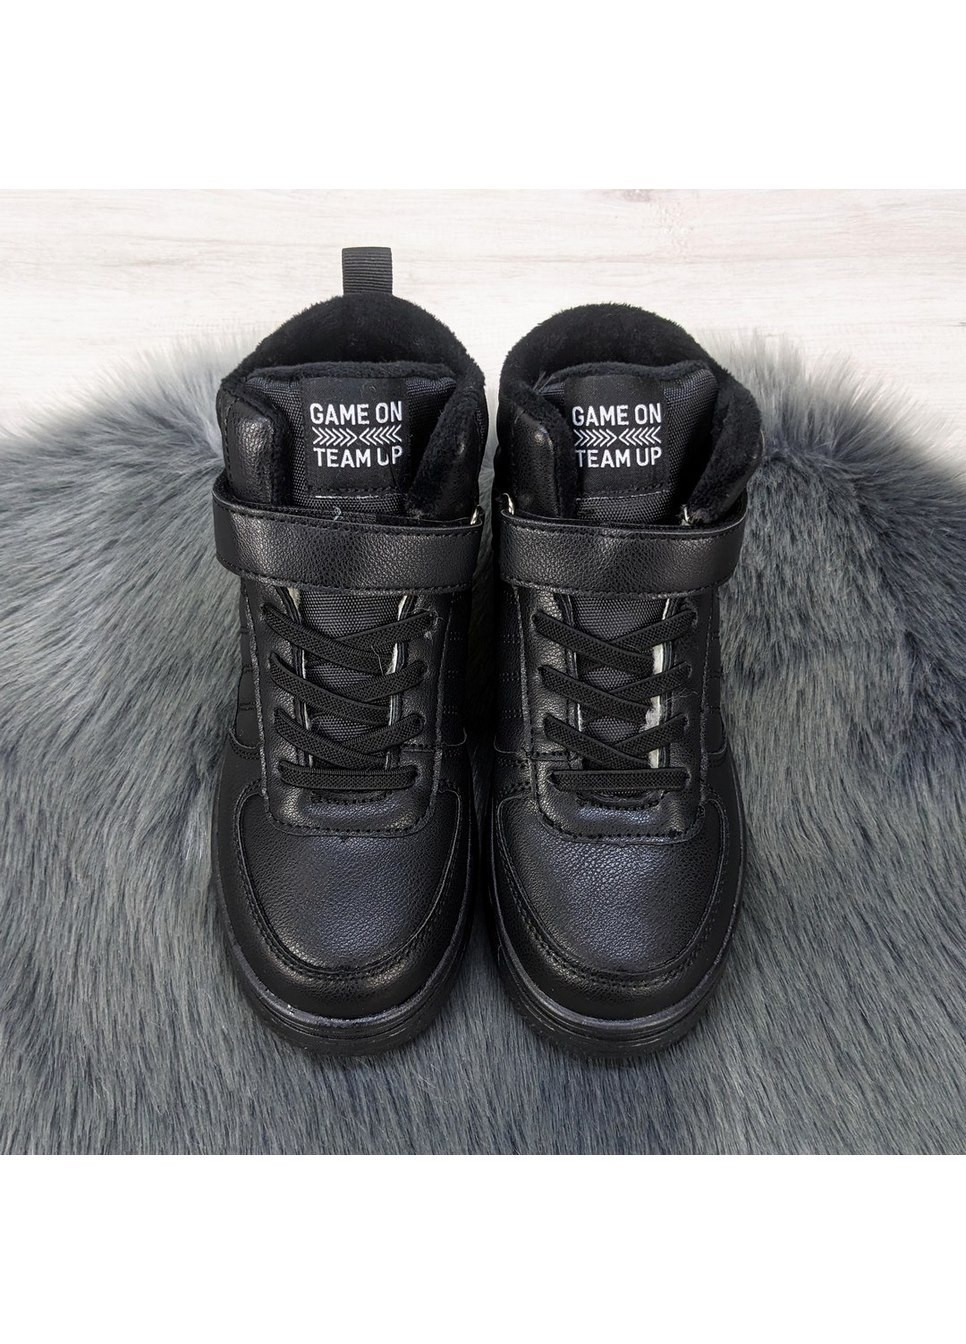 Черные повседневные зимние ботинки подростковые зимние для девочки BBT